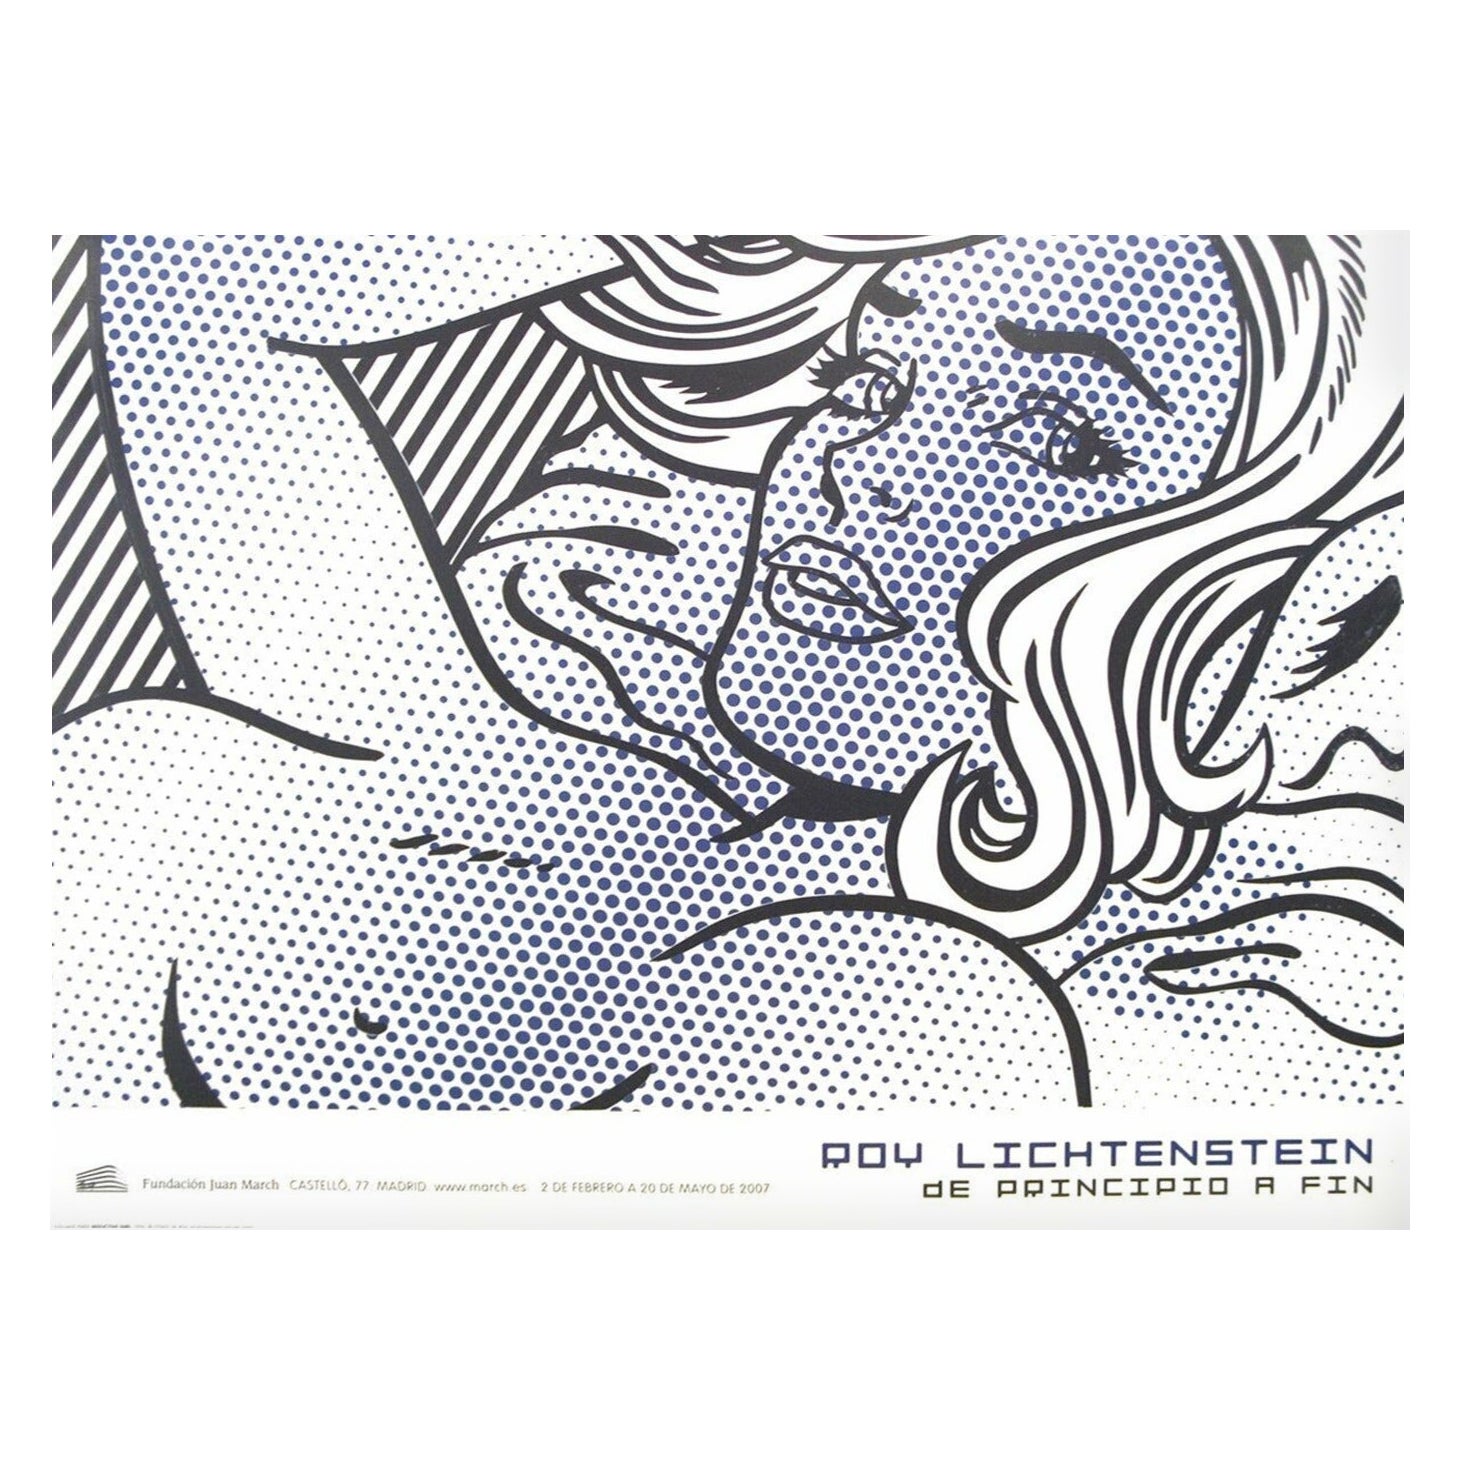 2007 Roy Lichtenstein - Seductive Girl - Fundacion Juan March Original Poster